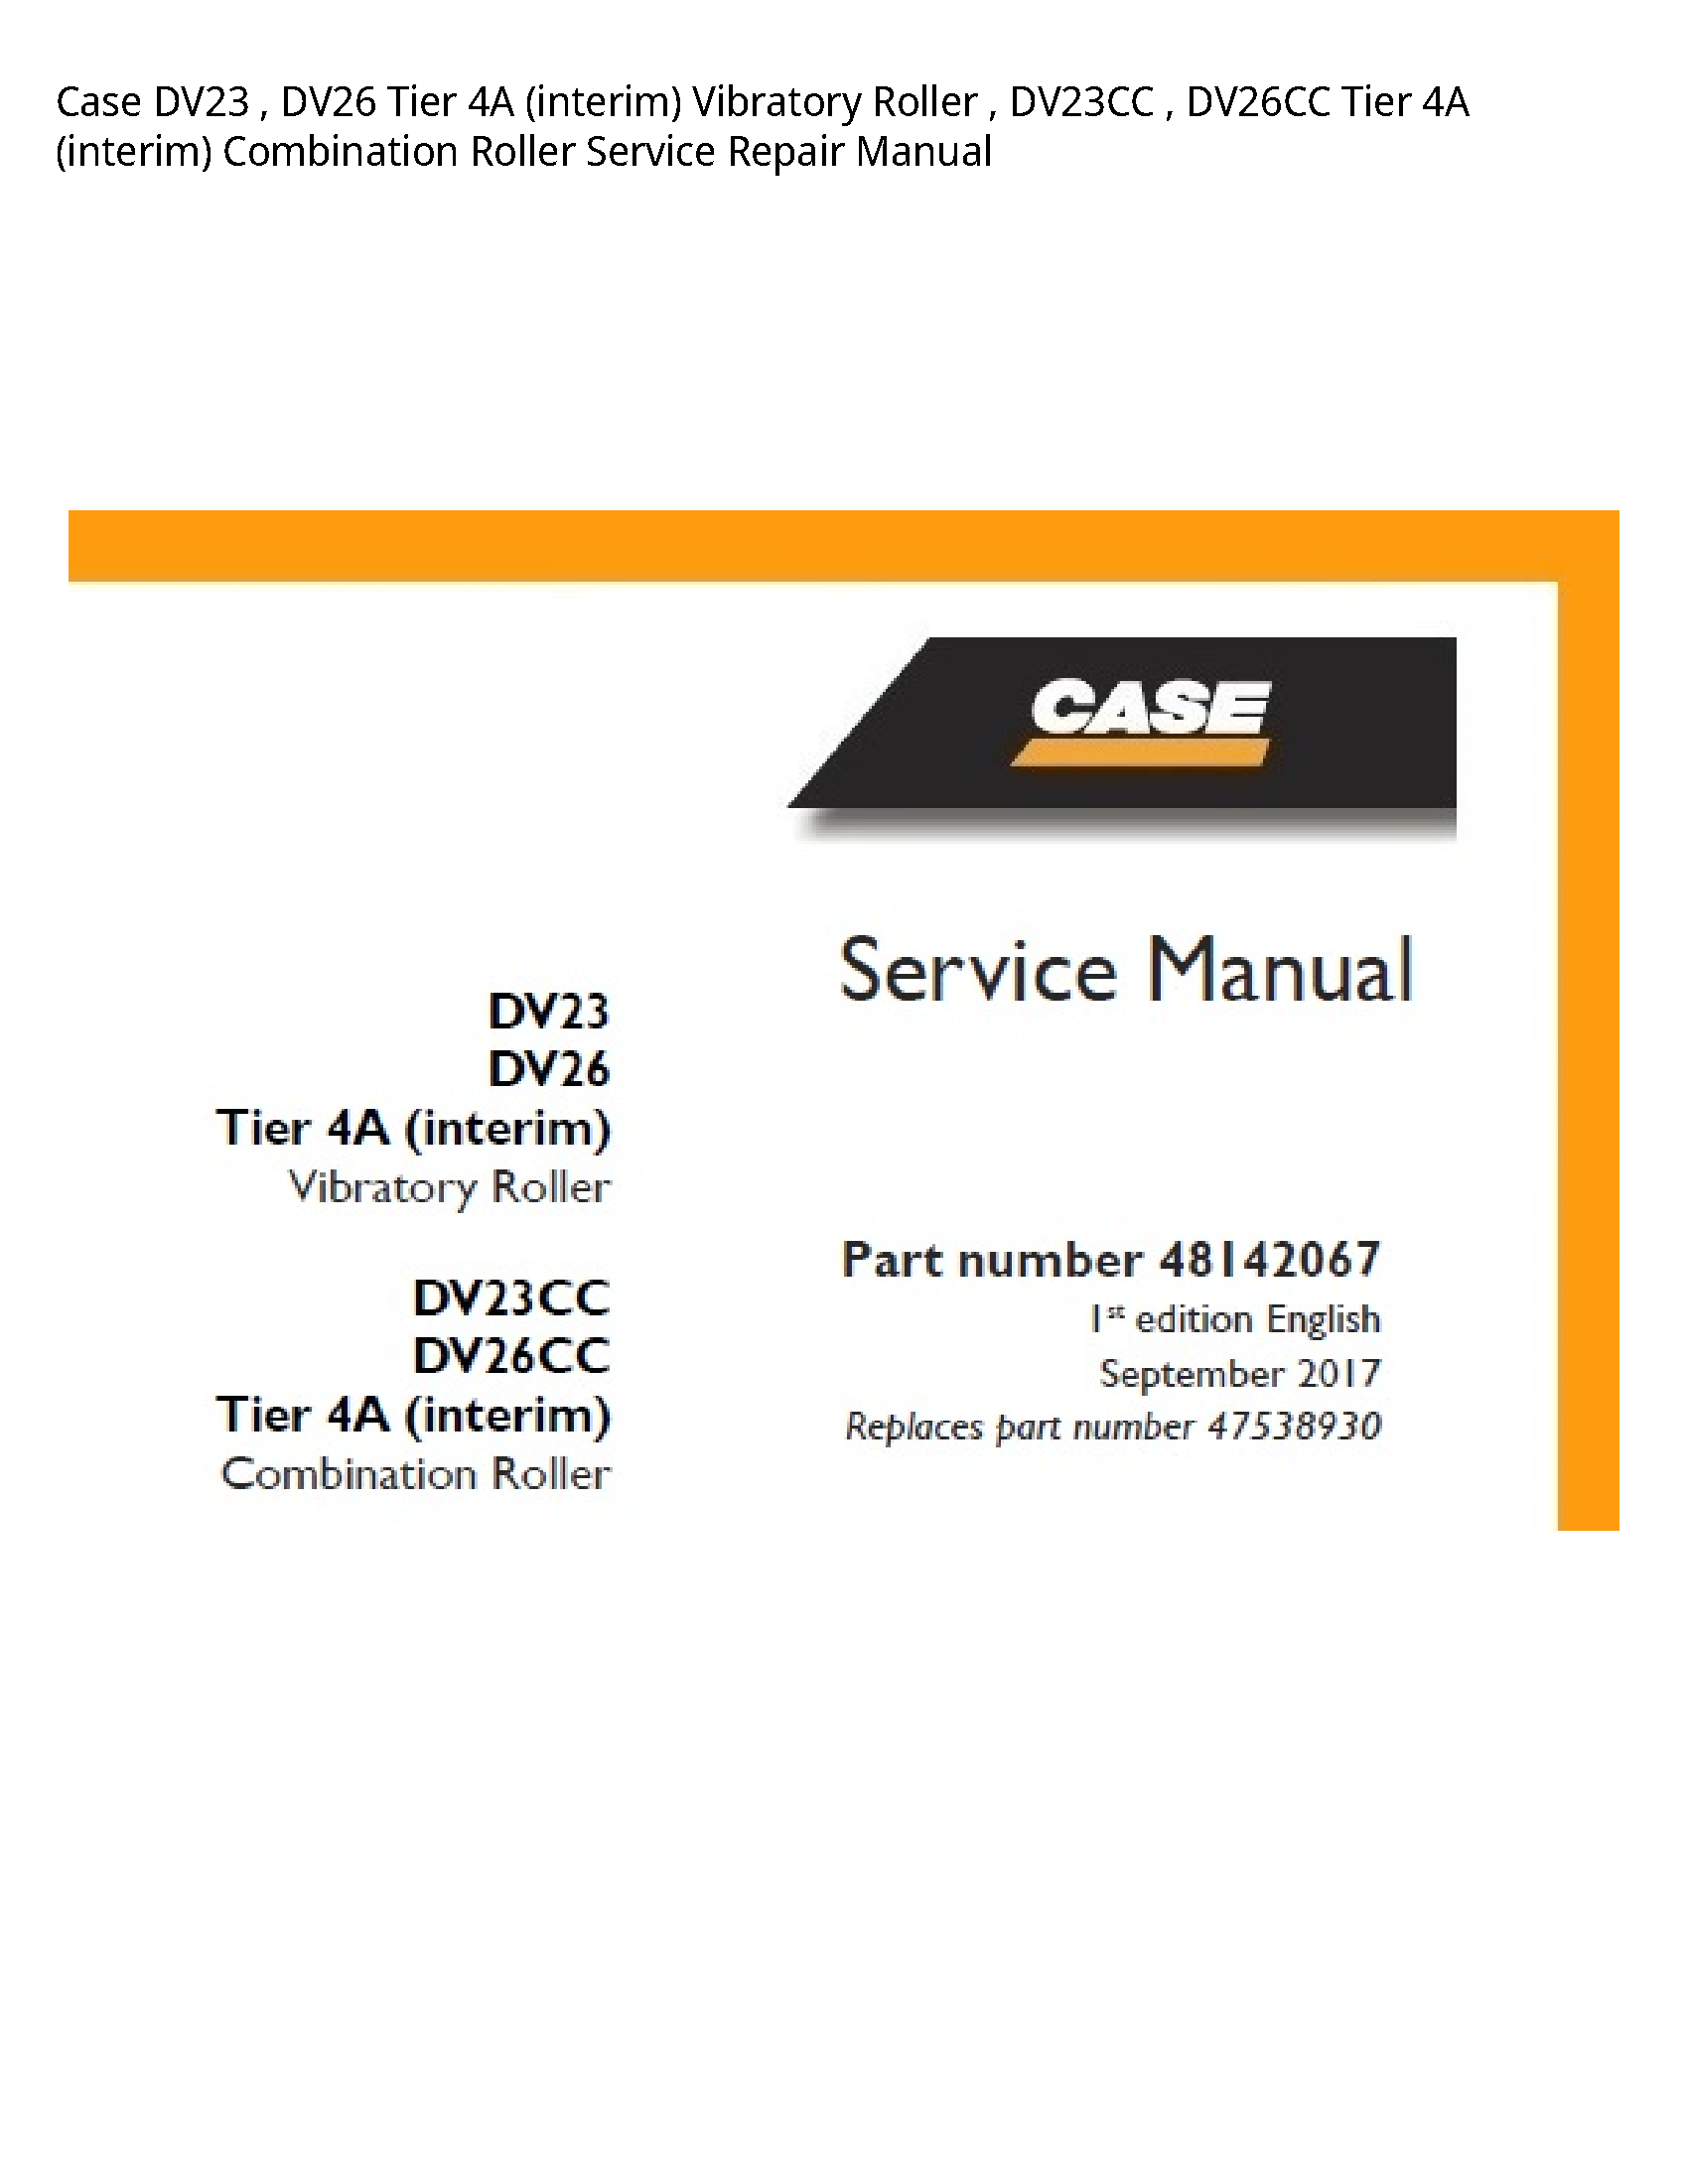 Case/Case IH DV23 Tier (interim) Vibratory Roller Tier (interim) Combination Roller manual